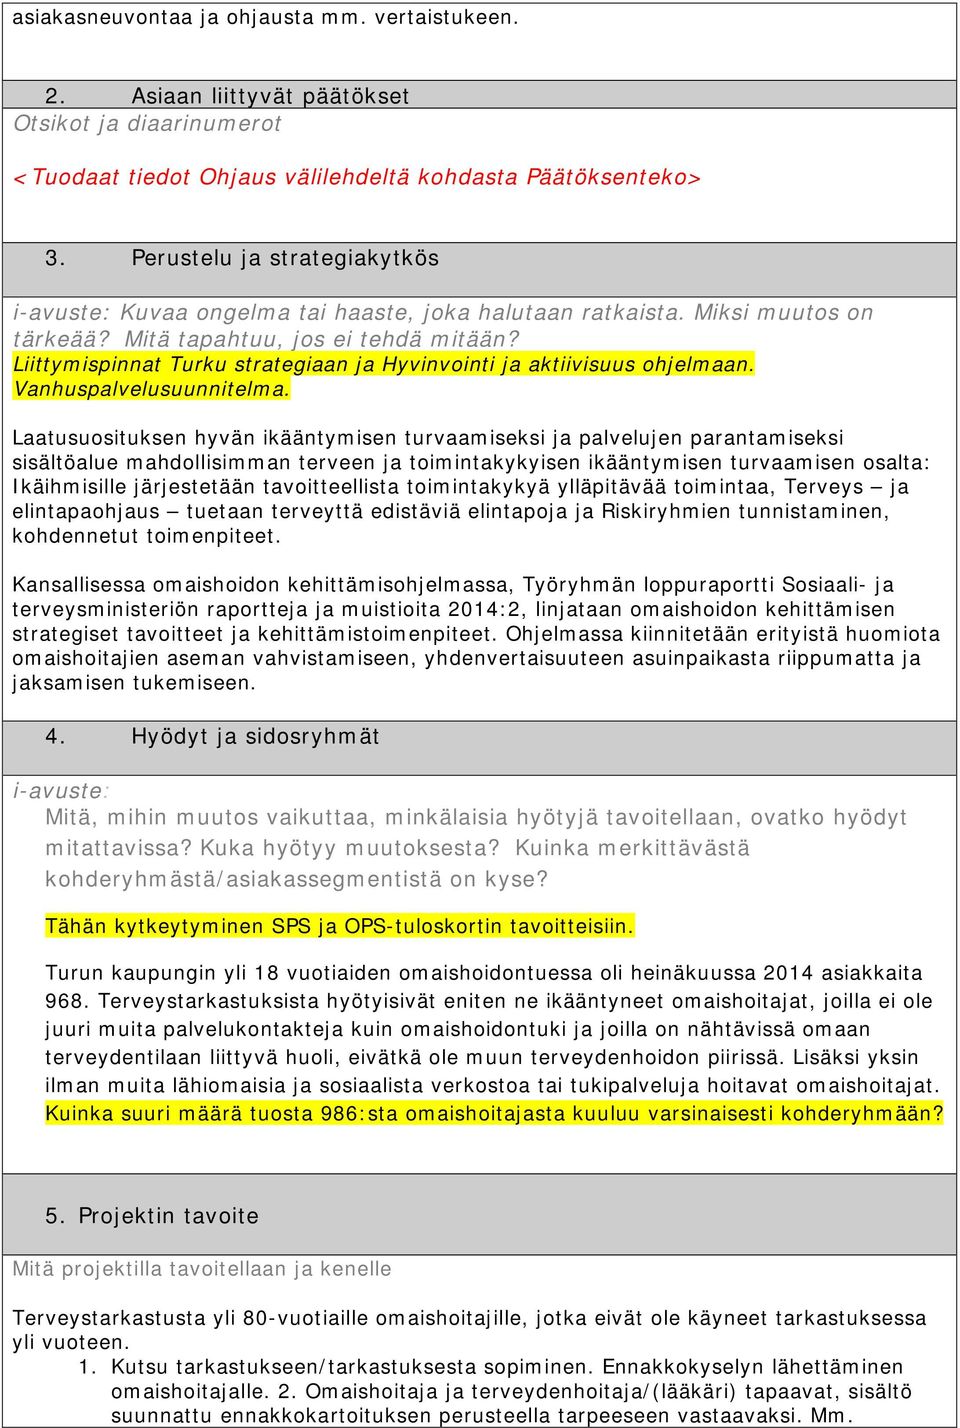 Liittymispinnat Turku strategiaan ja Hyvinvointi ja aktiivisuus ohjelmaan. Vanhuspalvelusuunnitelma.